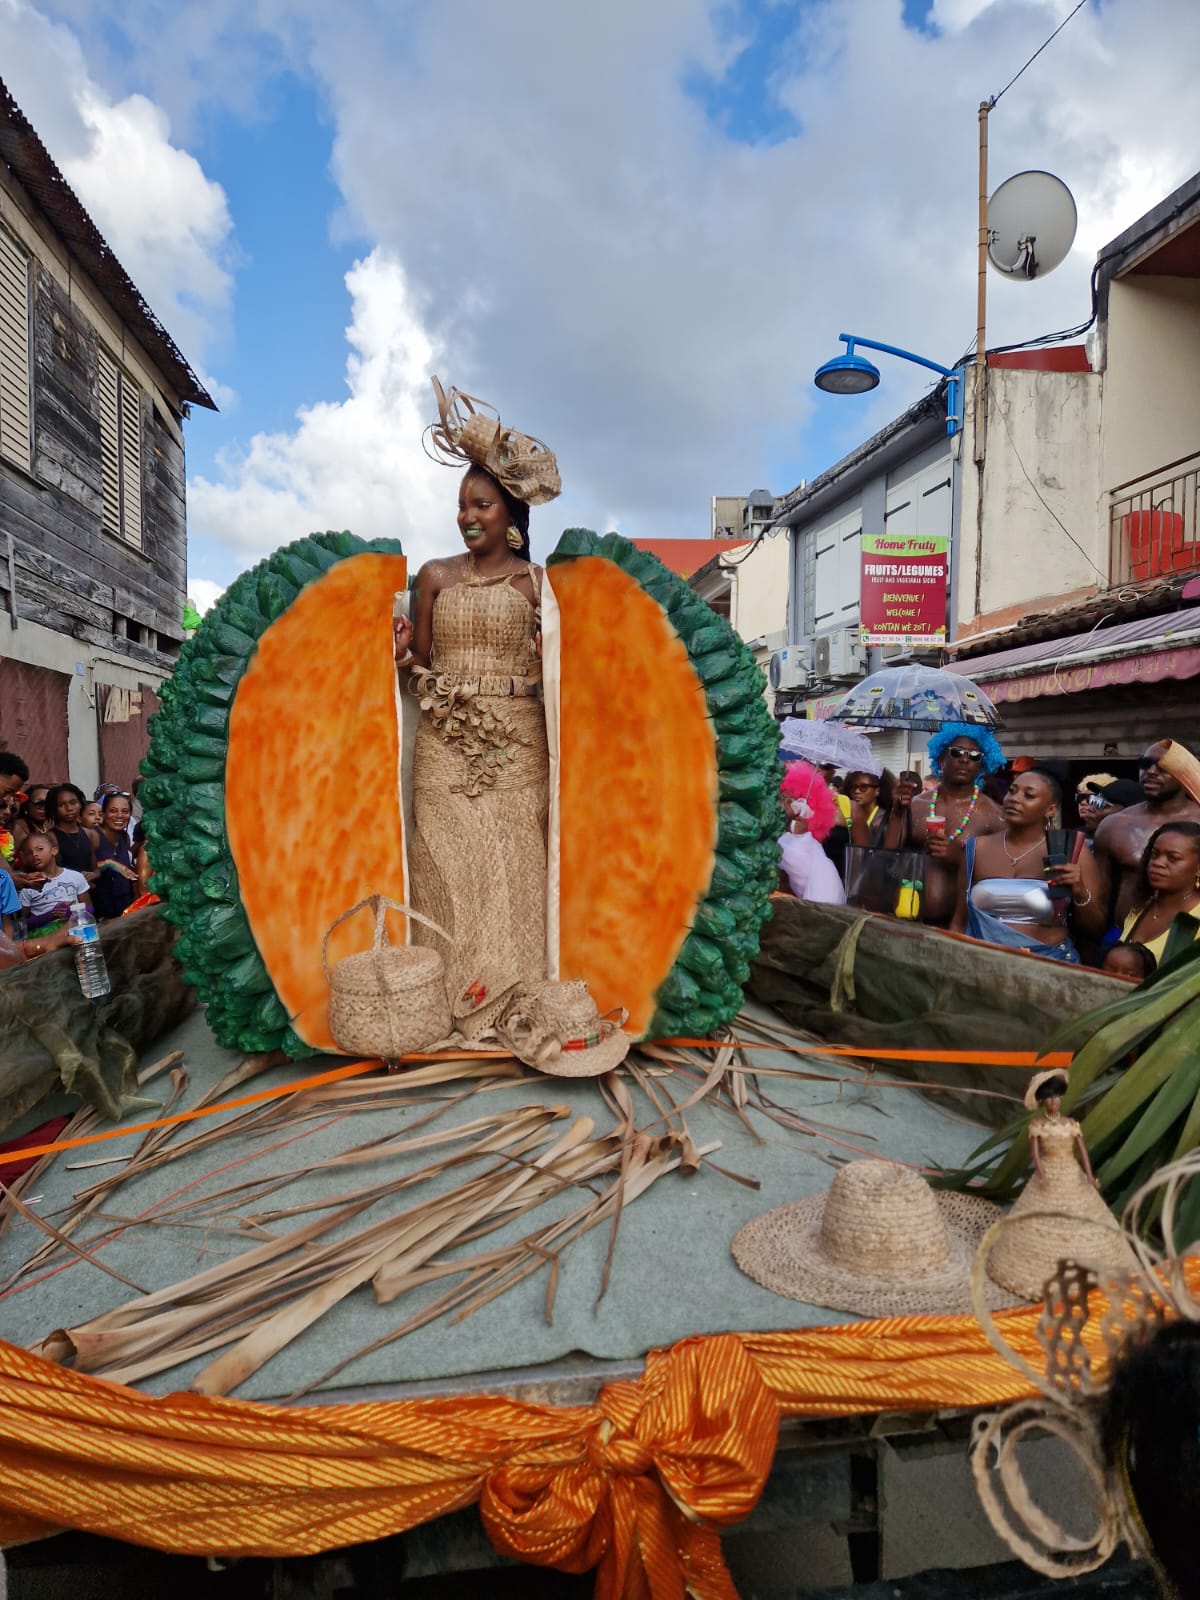 [EN IMAGES] Une Grande Parade du Sud à Sainte-Luce colorée et conviviale